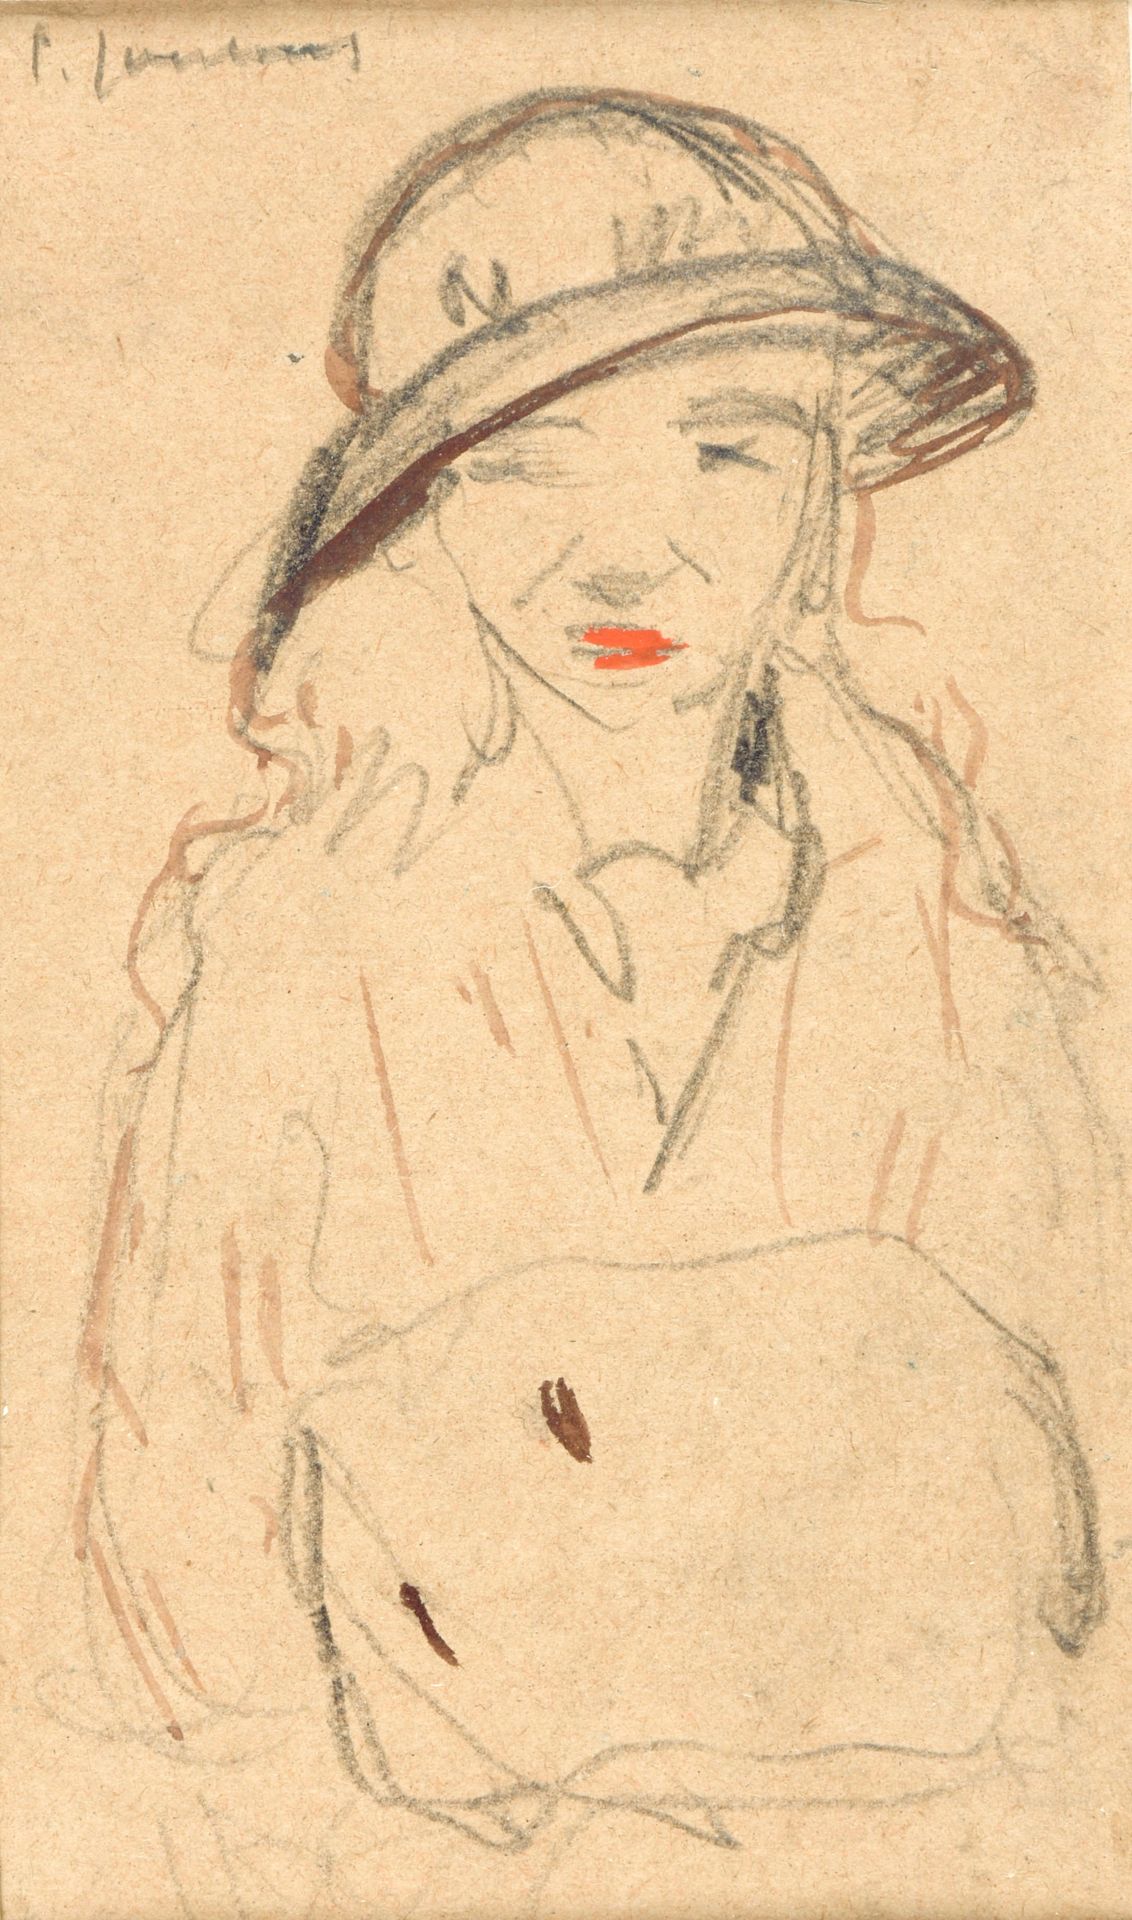 JOOSTENS, Paul (1889-1960) Vrouwenportret

Watercolour (13.5 x 12 cm), getekend &hellip;